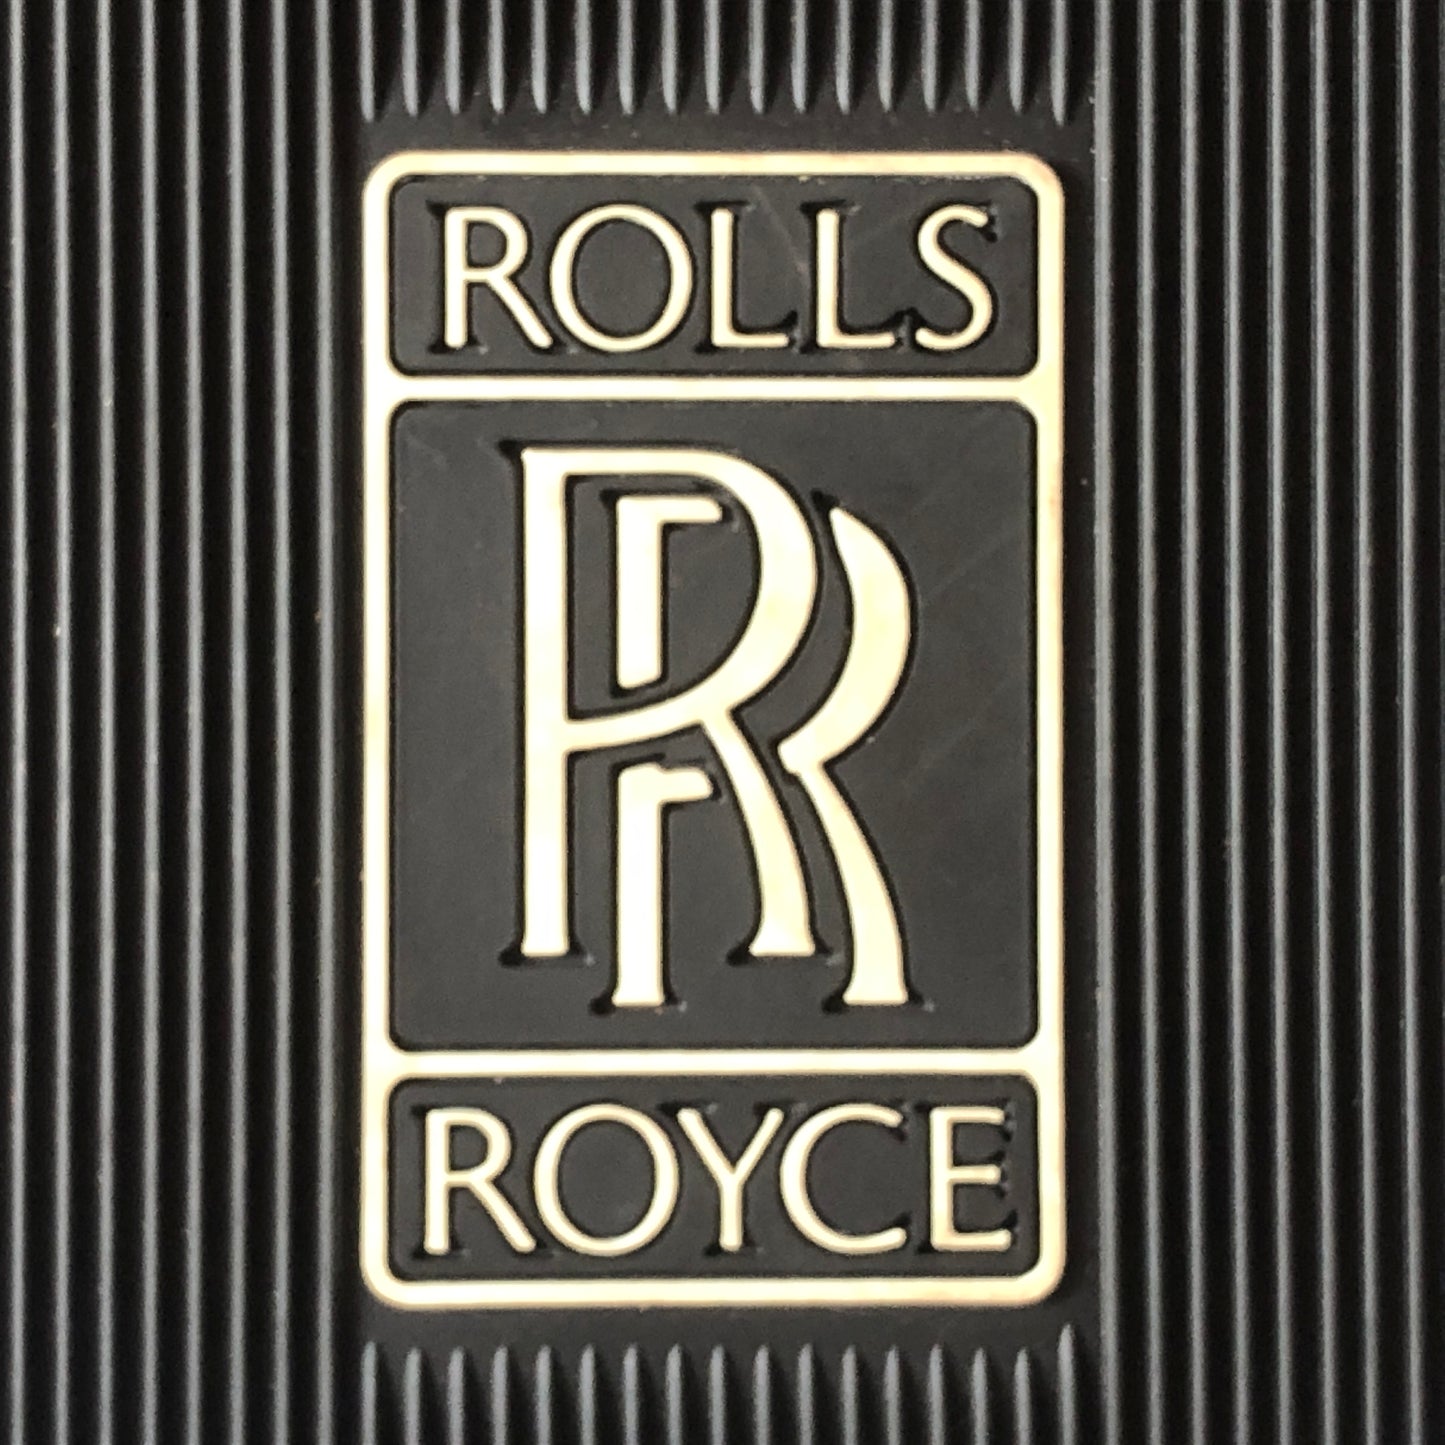 Rolls-Royce, Tappetini in Gomma di Colore Nero con Stemma Rolls-Royce di Colore Bianco - Raggi's Collectibles' Automotive Art